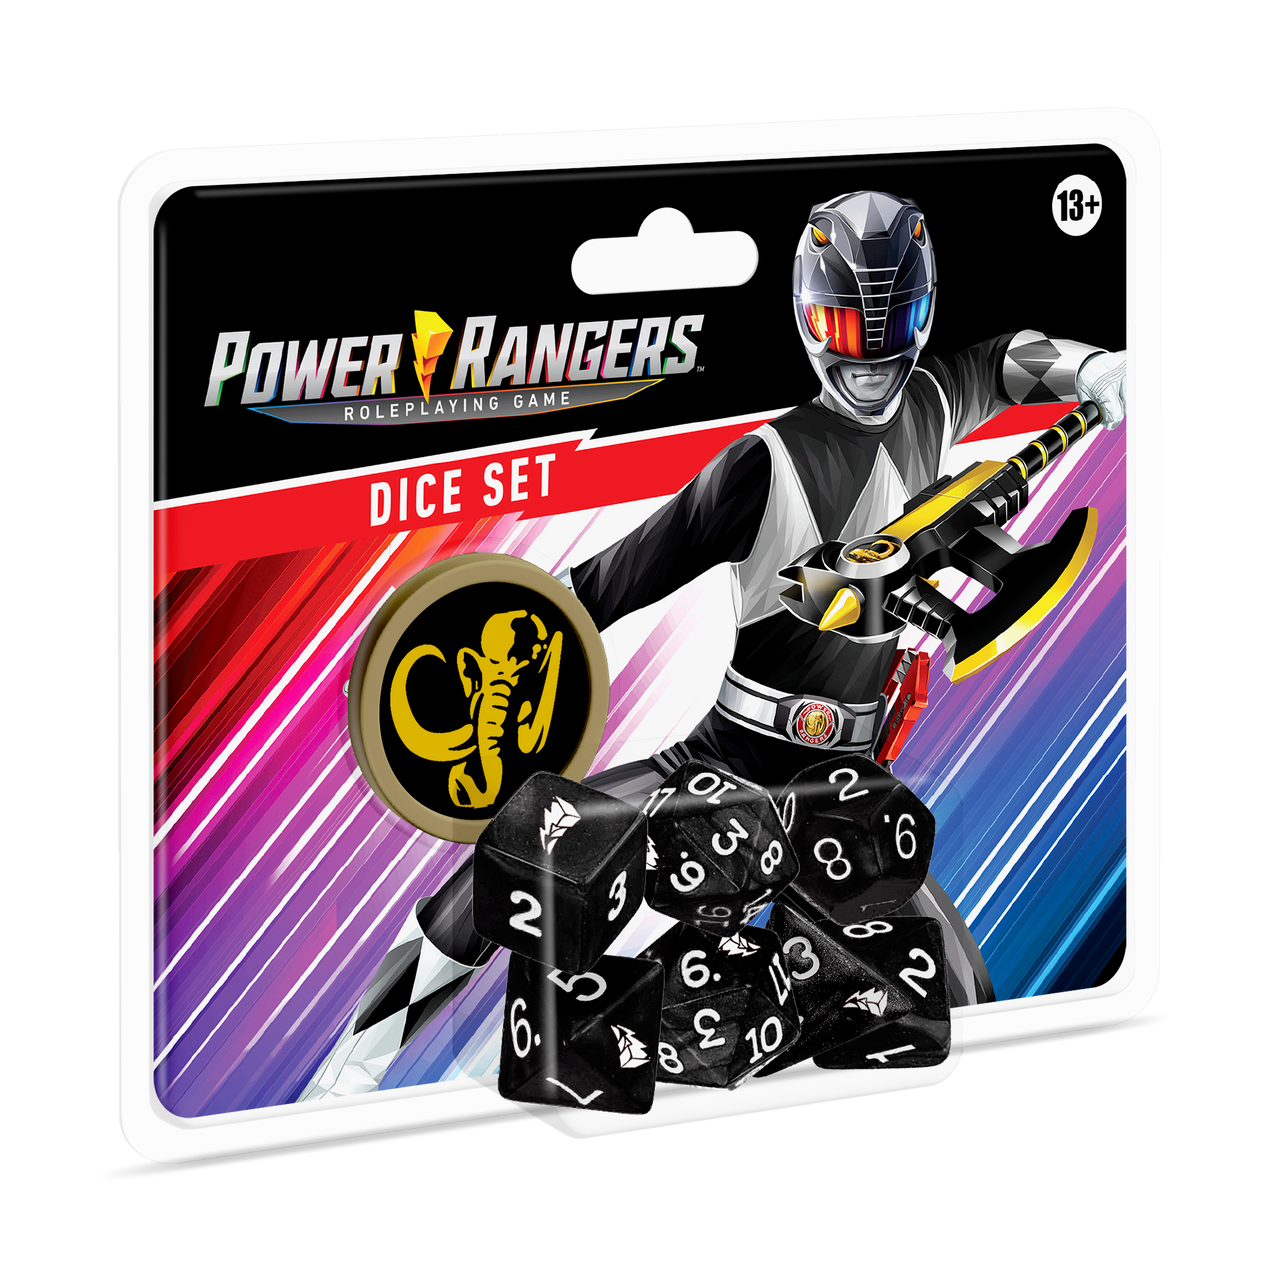 Farkle Dice Game - Ranger Set